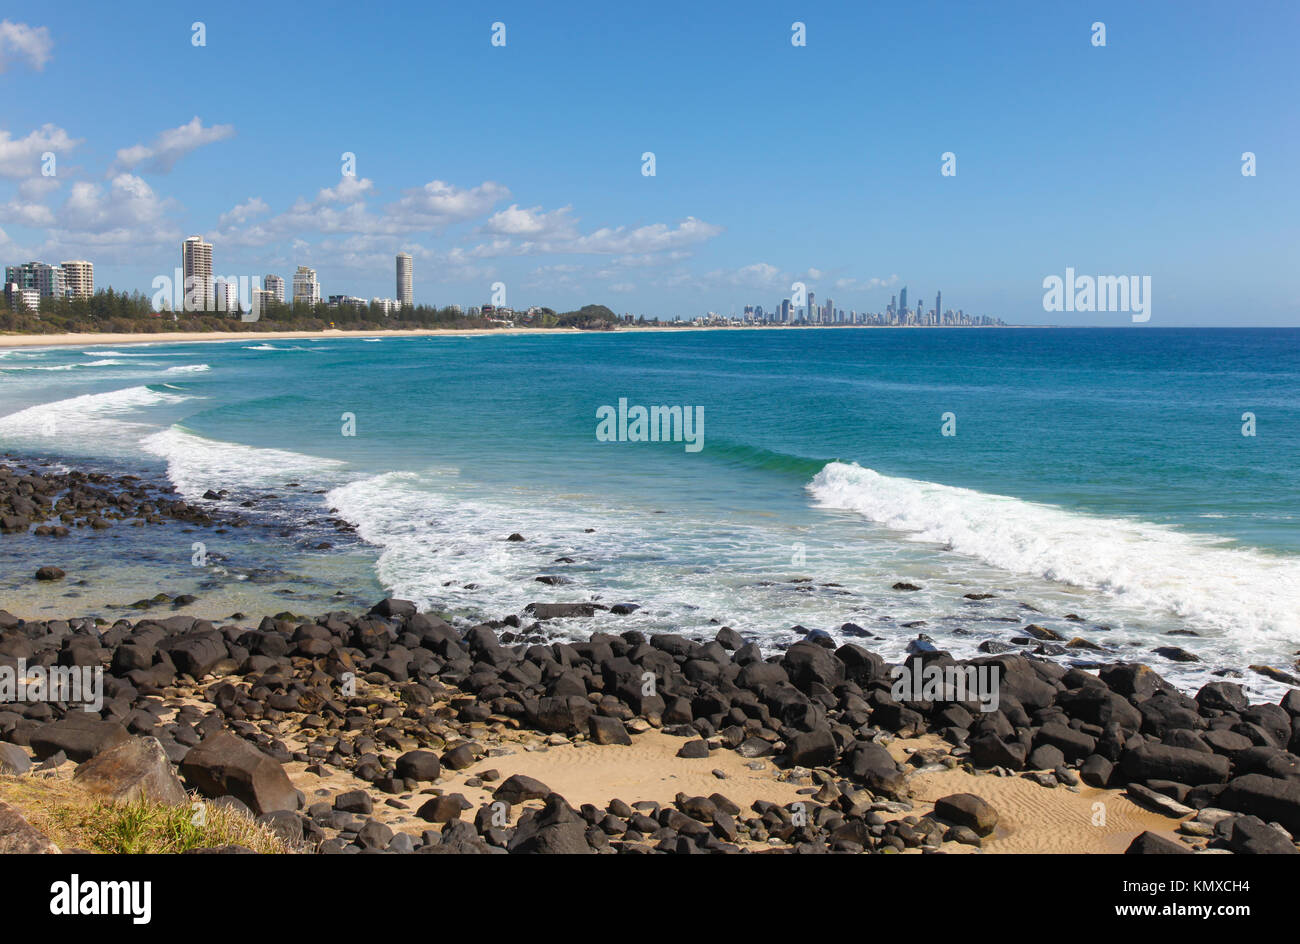 Une merveilleuse journée à Burleigh Heads sur la célèbre Gold Coast du Queensland - Australie. Les tours d'habitation à Surfers Paradise peut être vu dans la distance. Banque D'Images